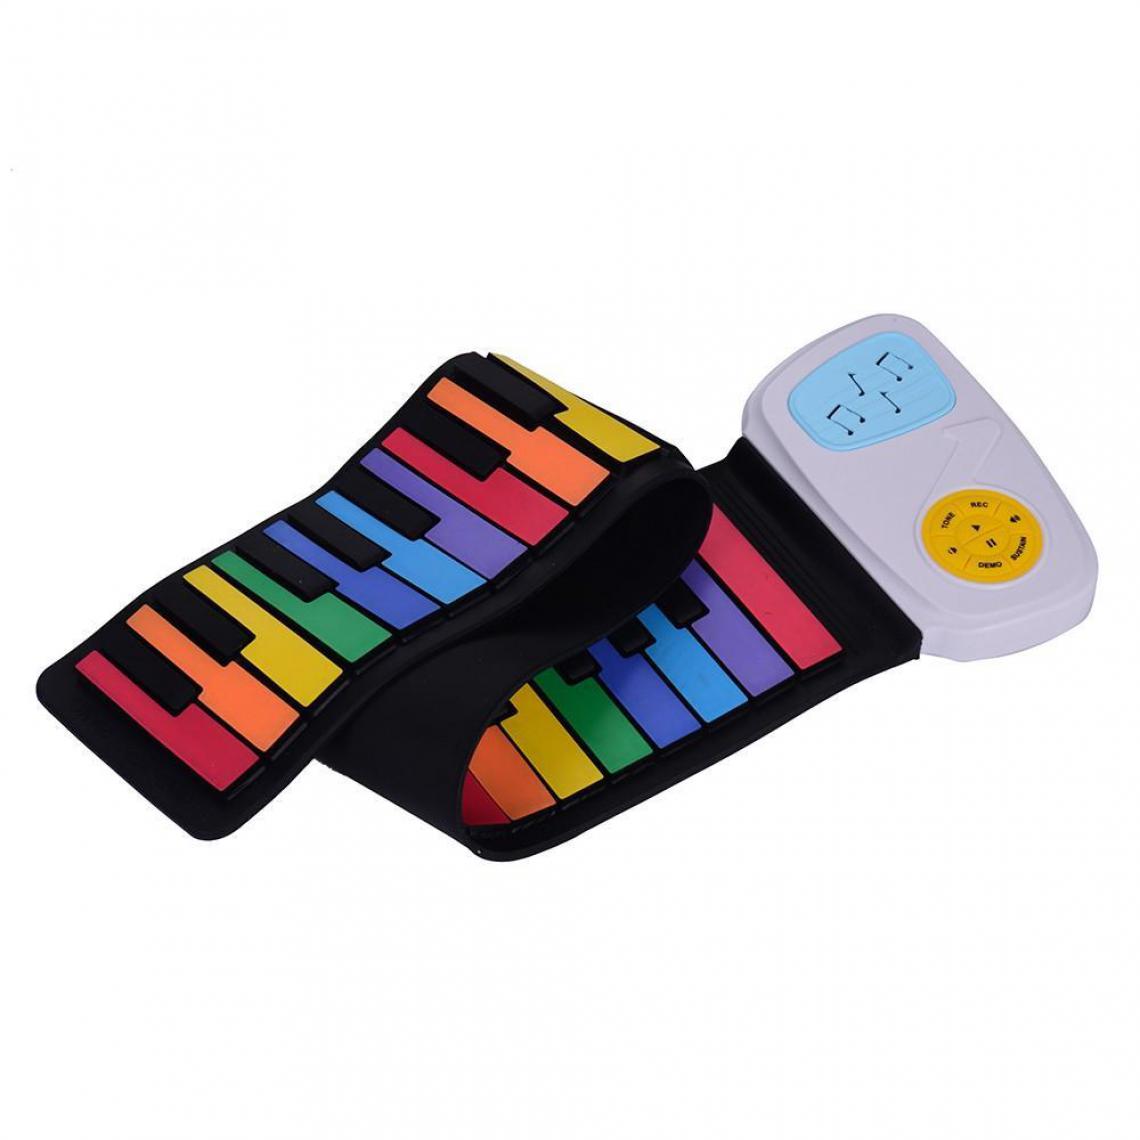 Justgreenbox - 49 touches arc-en-ciel Roll-Up Piano clavier électronique coloré silicium haut-parleur intégré jouet d'éducation musicale - T3654657597566 - Instruments de musique